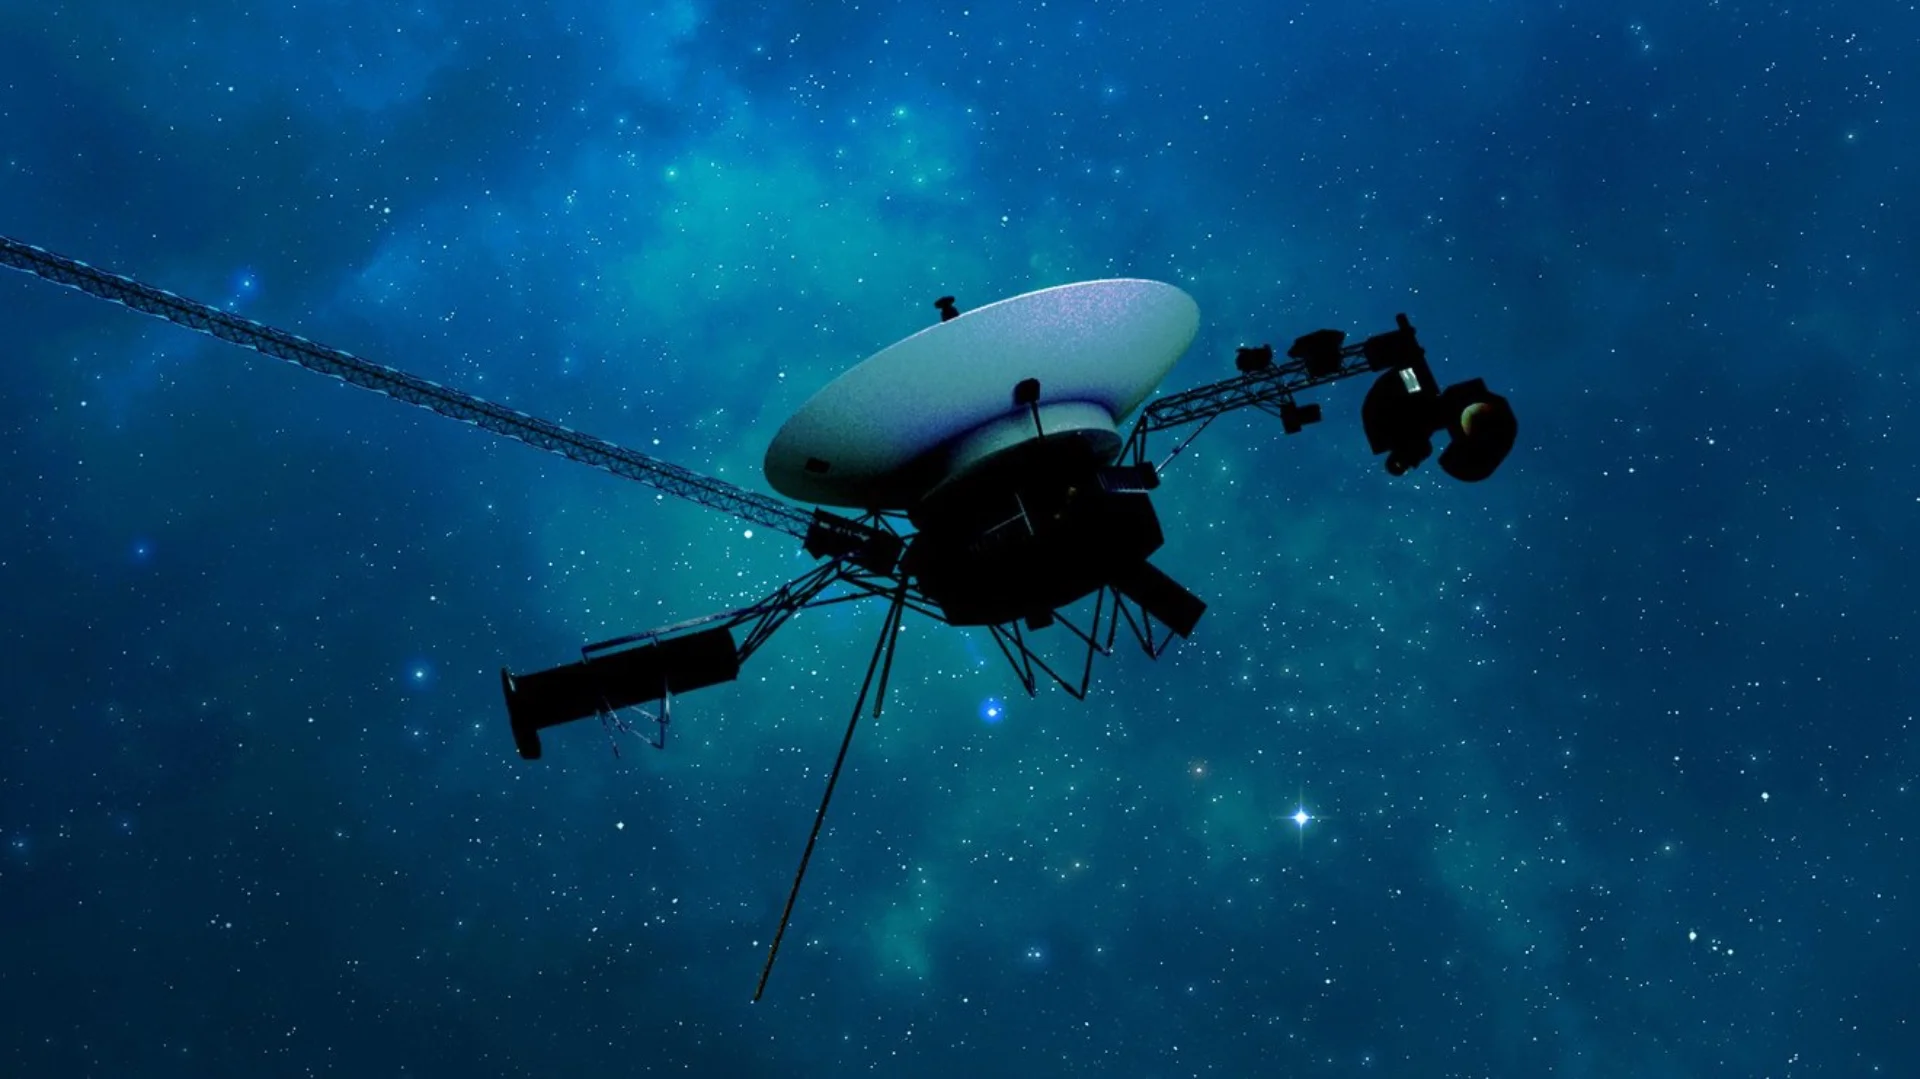 La sonde Voyager 1 de la NASA transmet à nouveau des données o/